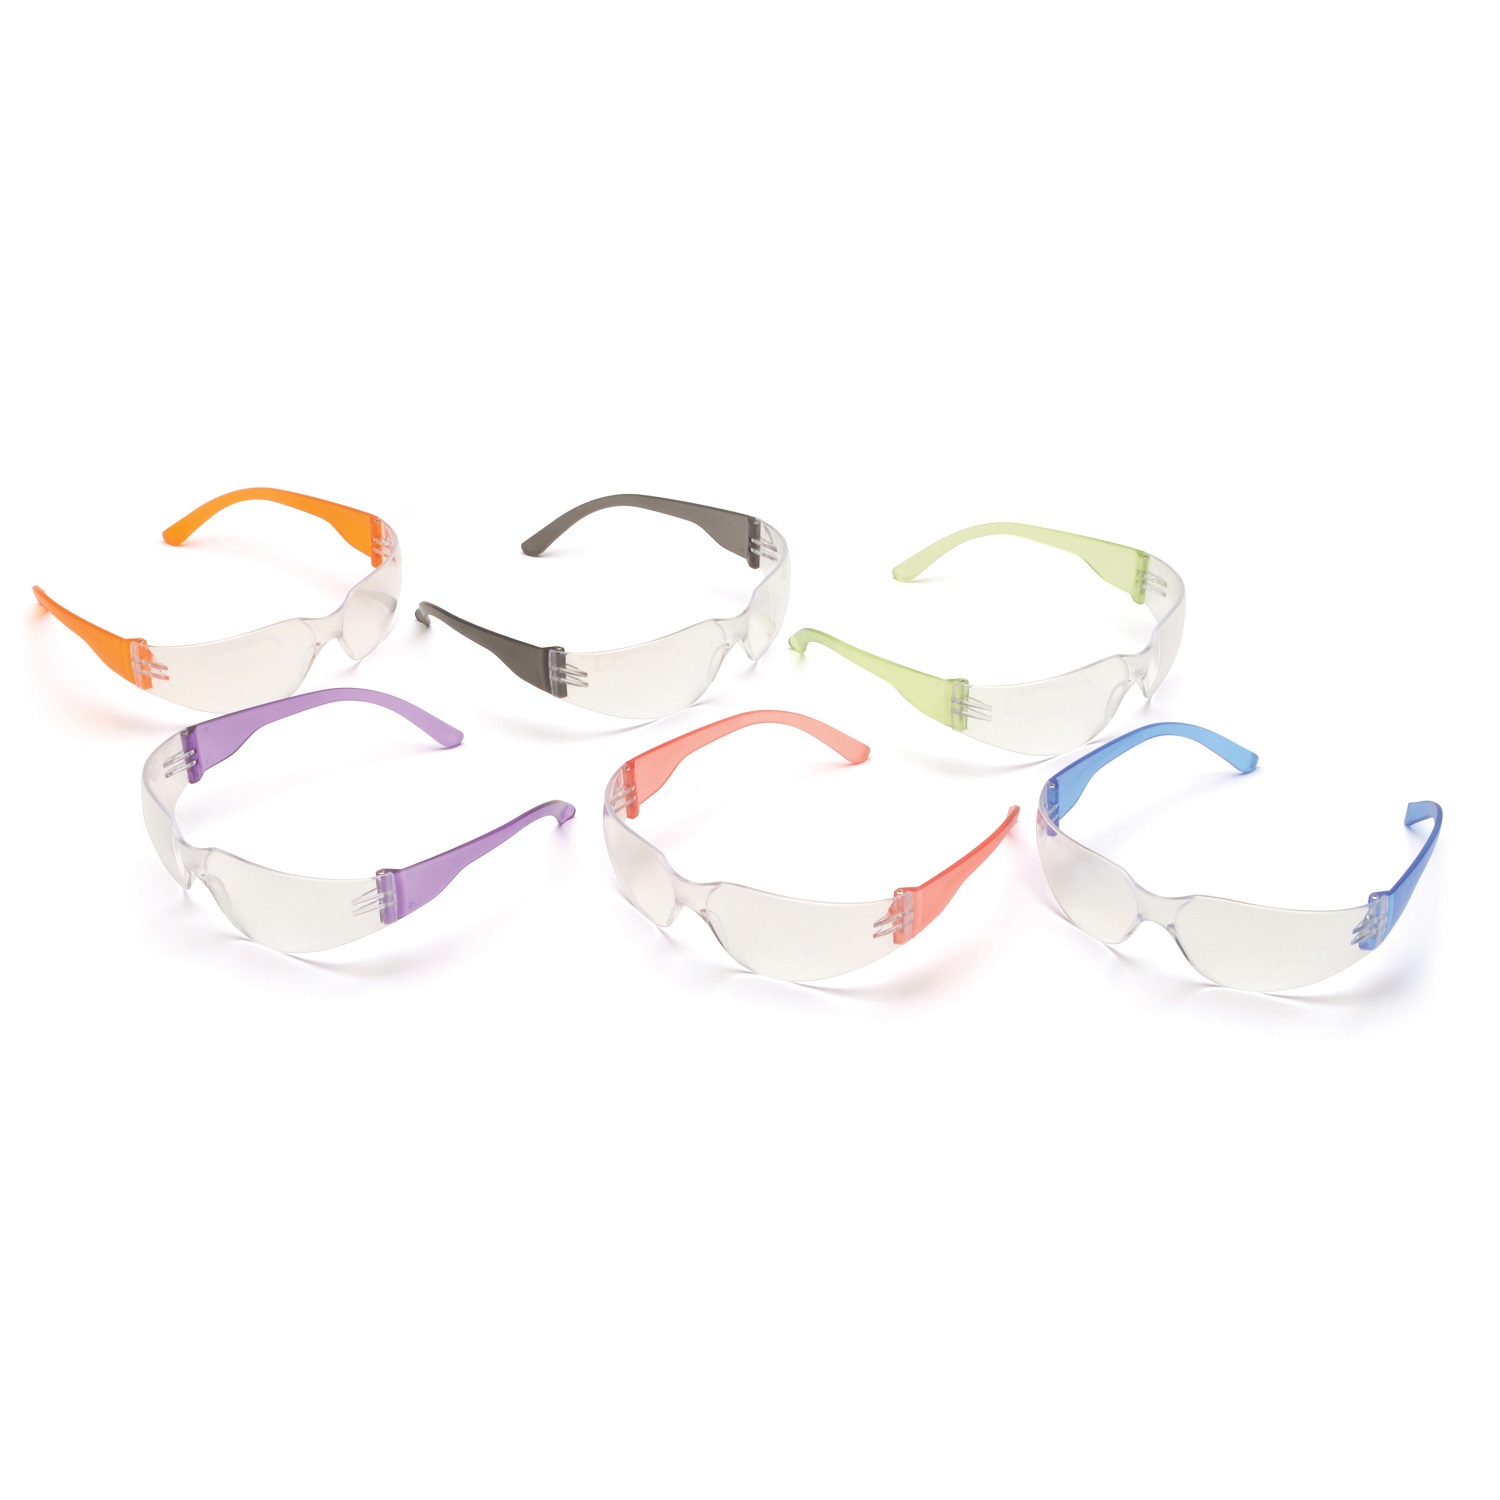 Pyramex Mini Intruder Multi-Color Safety Glasses 12 Pack